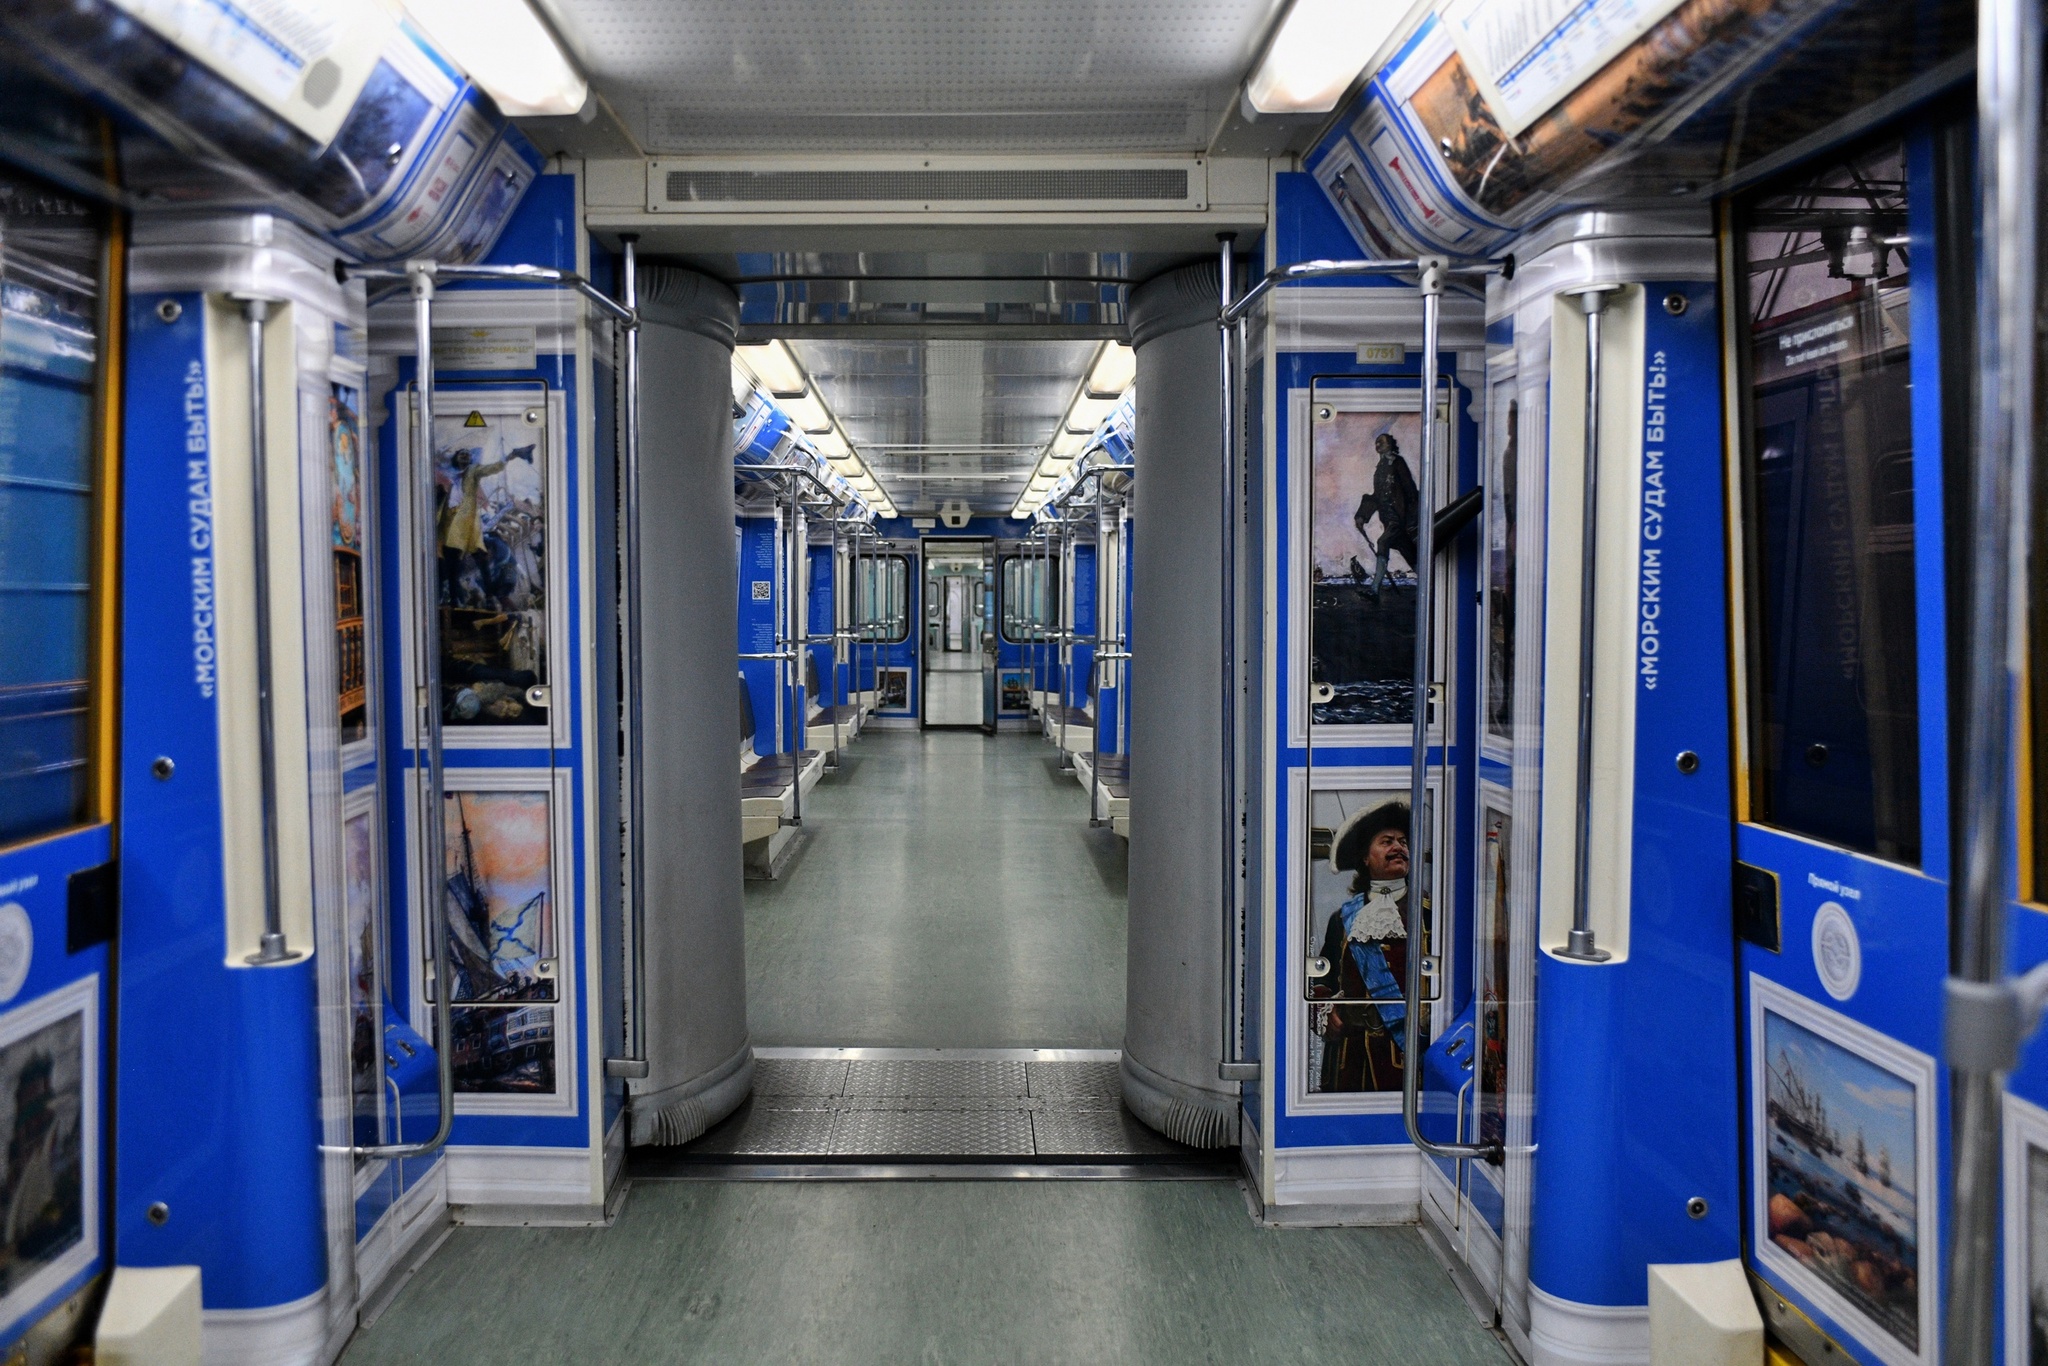 новые вагоны в метро в москве